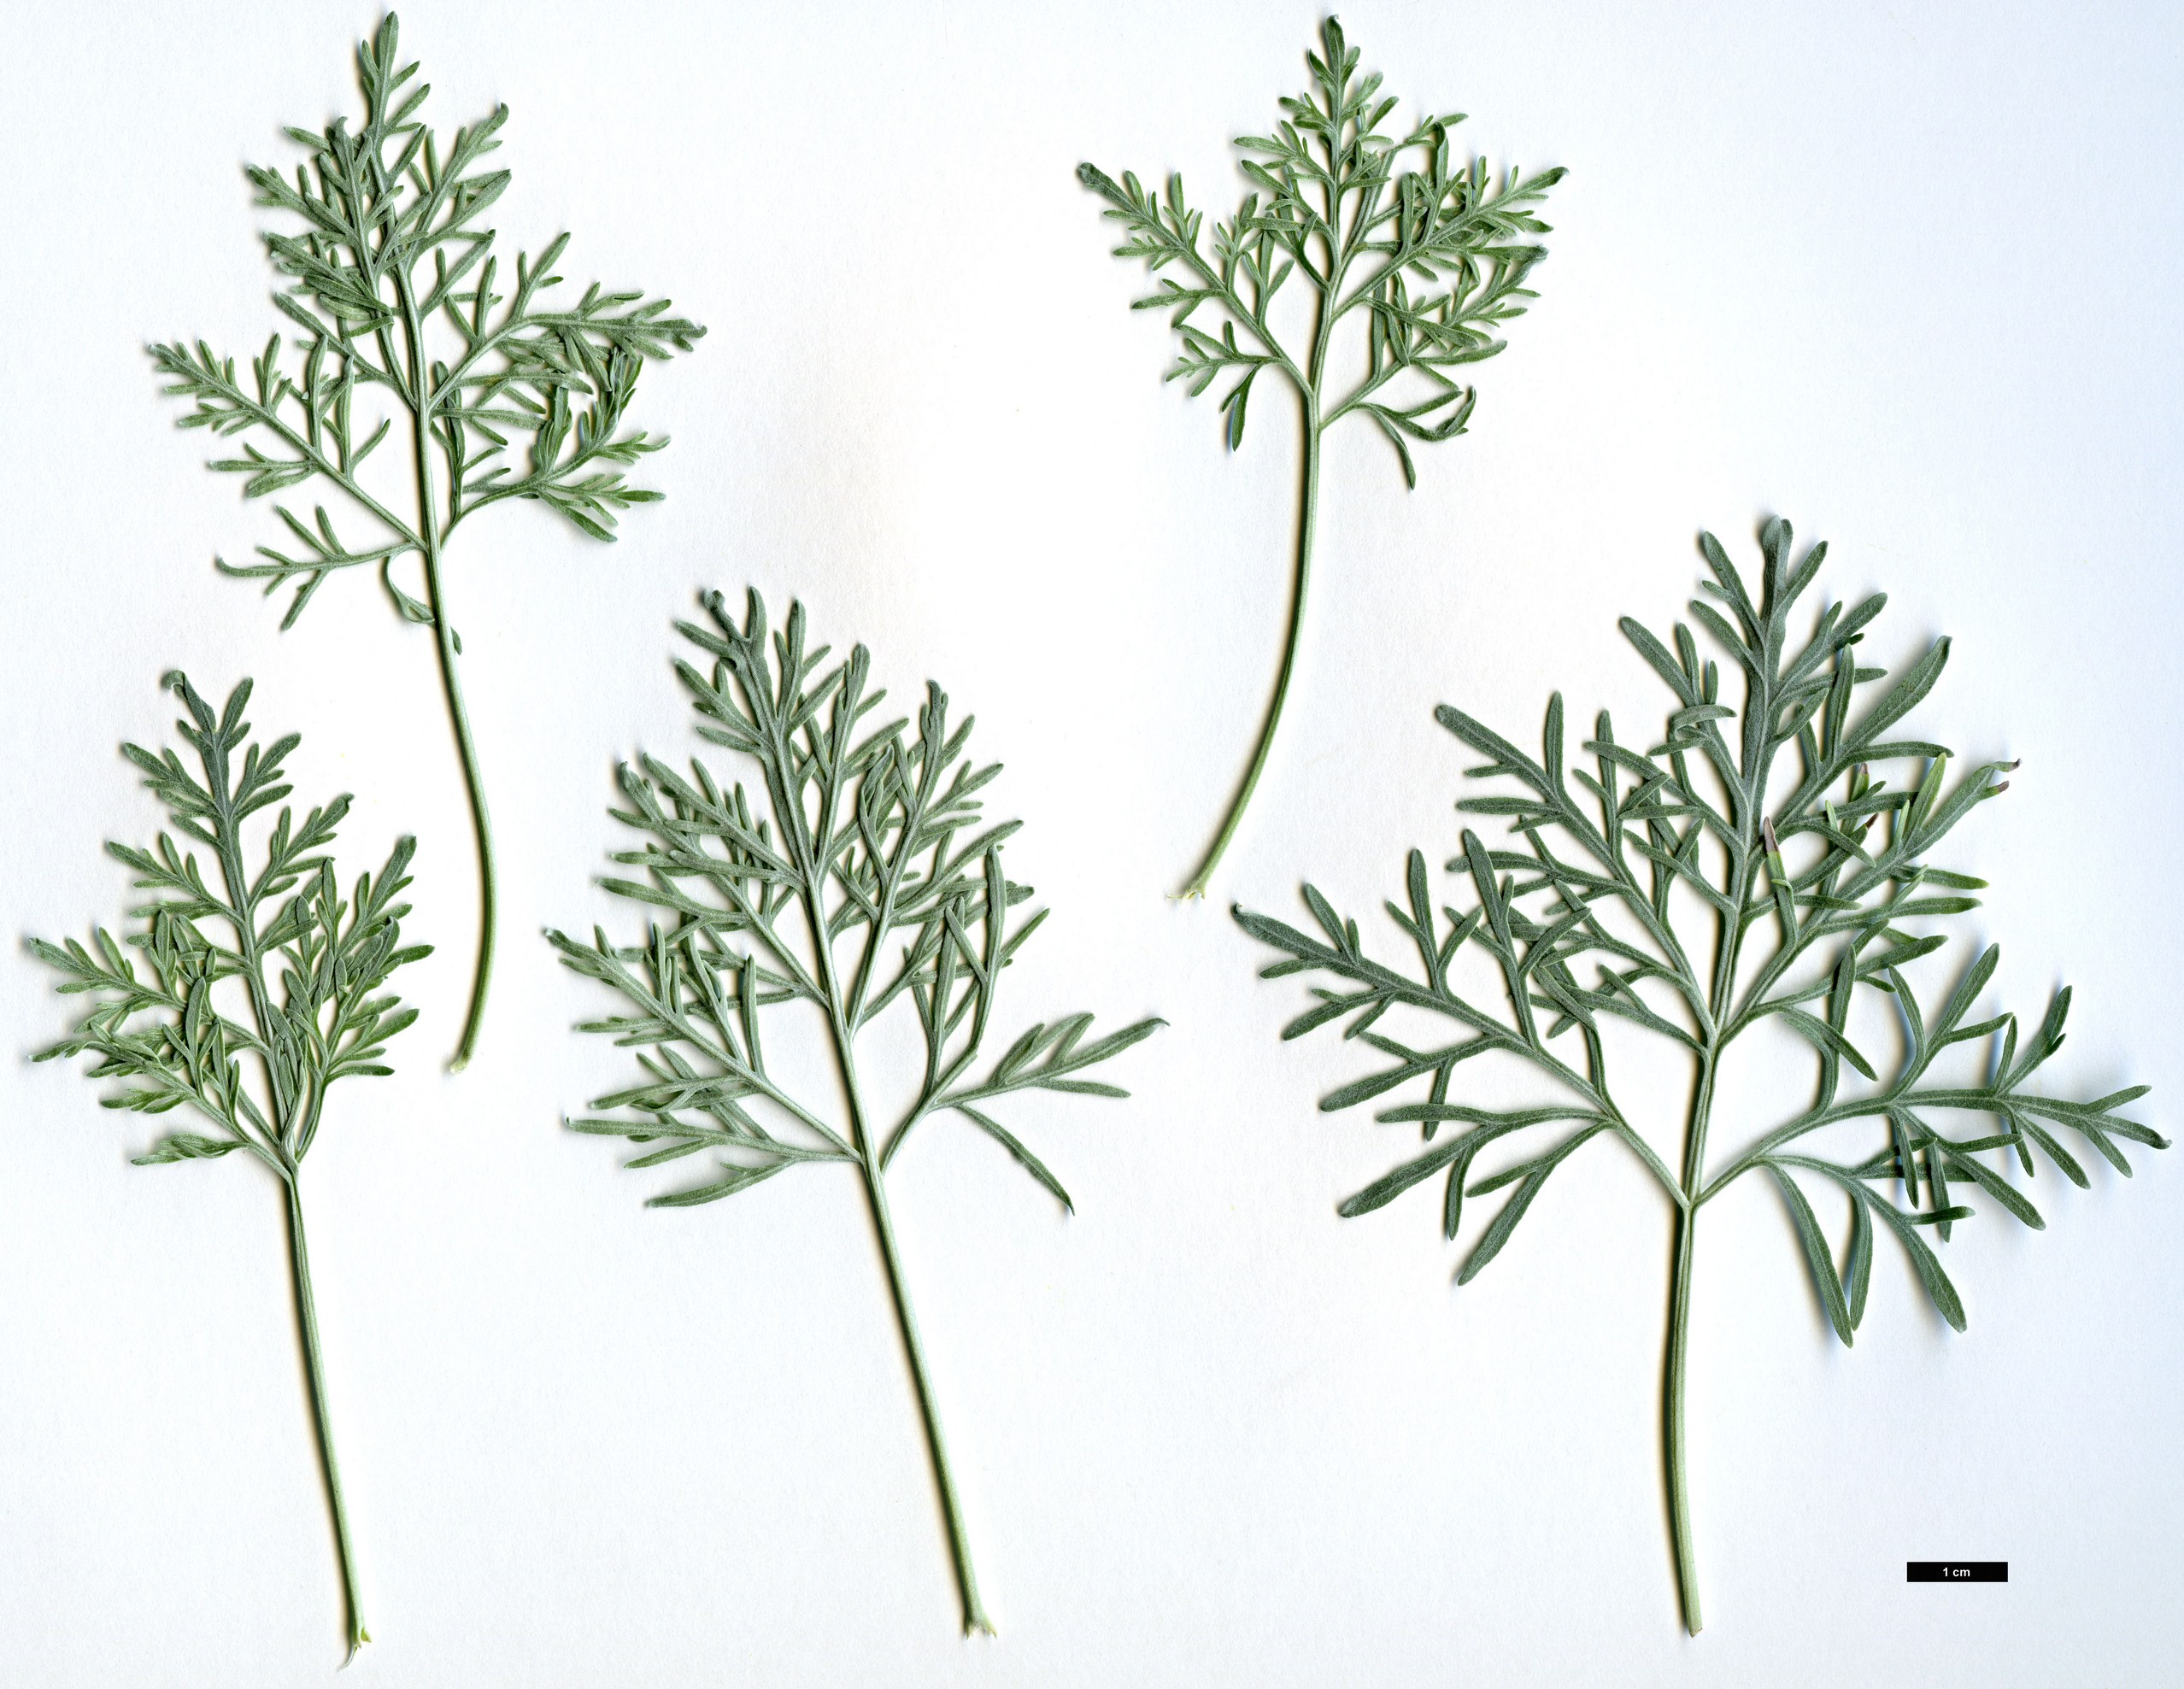 High resolution image: Family: Asteraceae - Genus: Artemisia - Taxon: arborescens